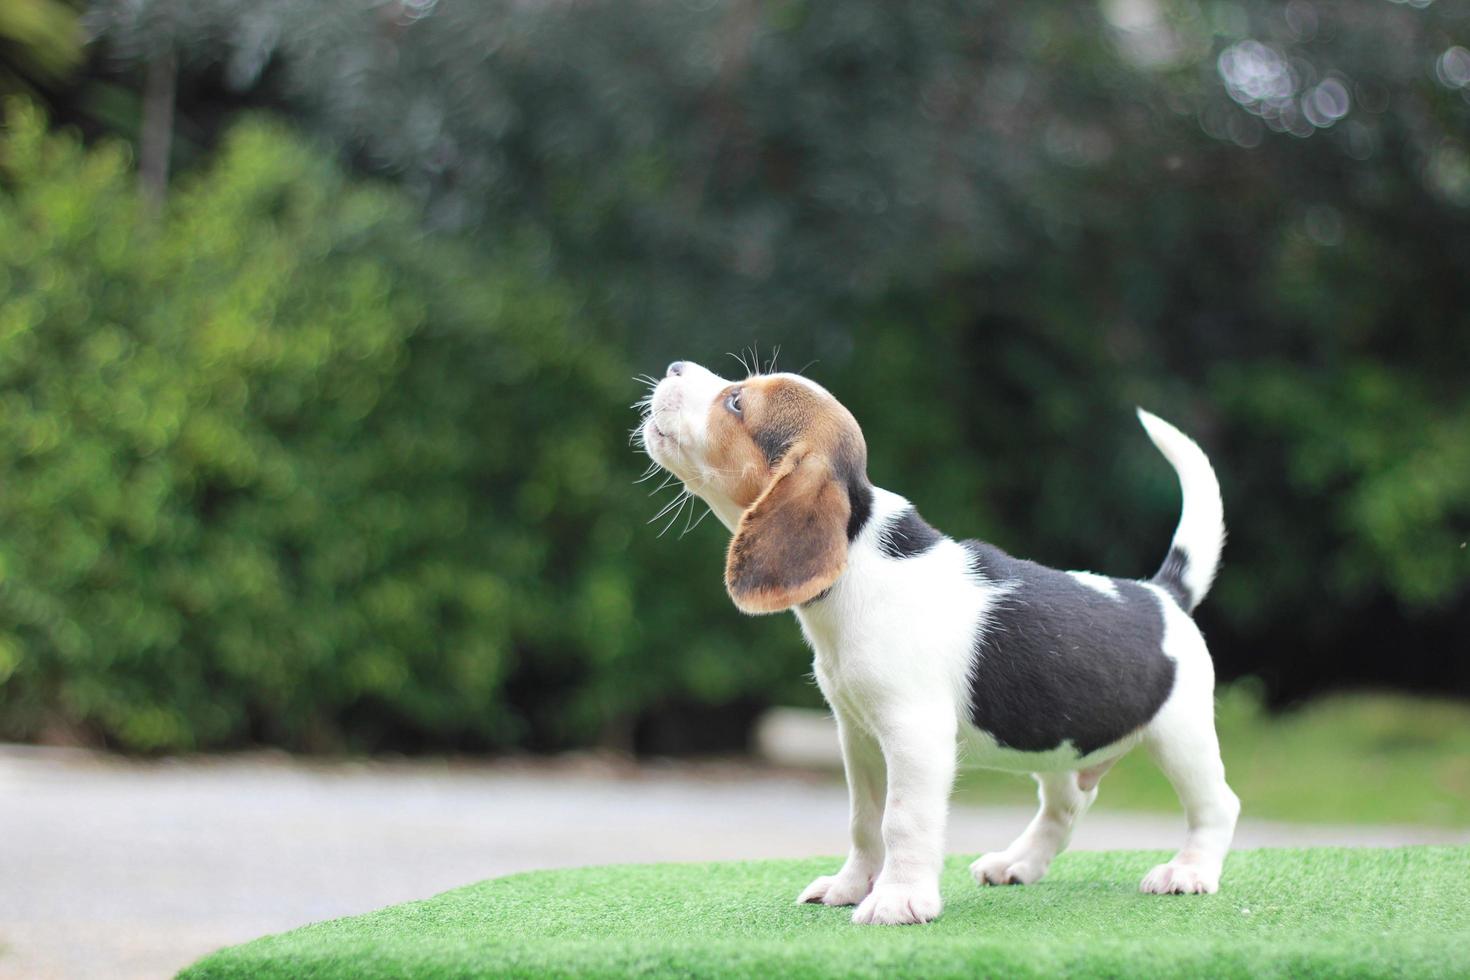 het algemene uiterlijk van de beagle lijkt op een miniatuur jachthond. Beagles hebben uitstekende neuzen. Beagles worden gebruikt in een reeks onderzoeksprocedures. hond foto hebben kopie ruimte.